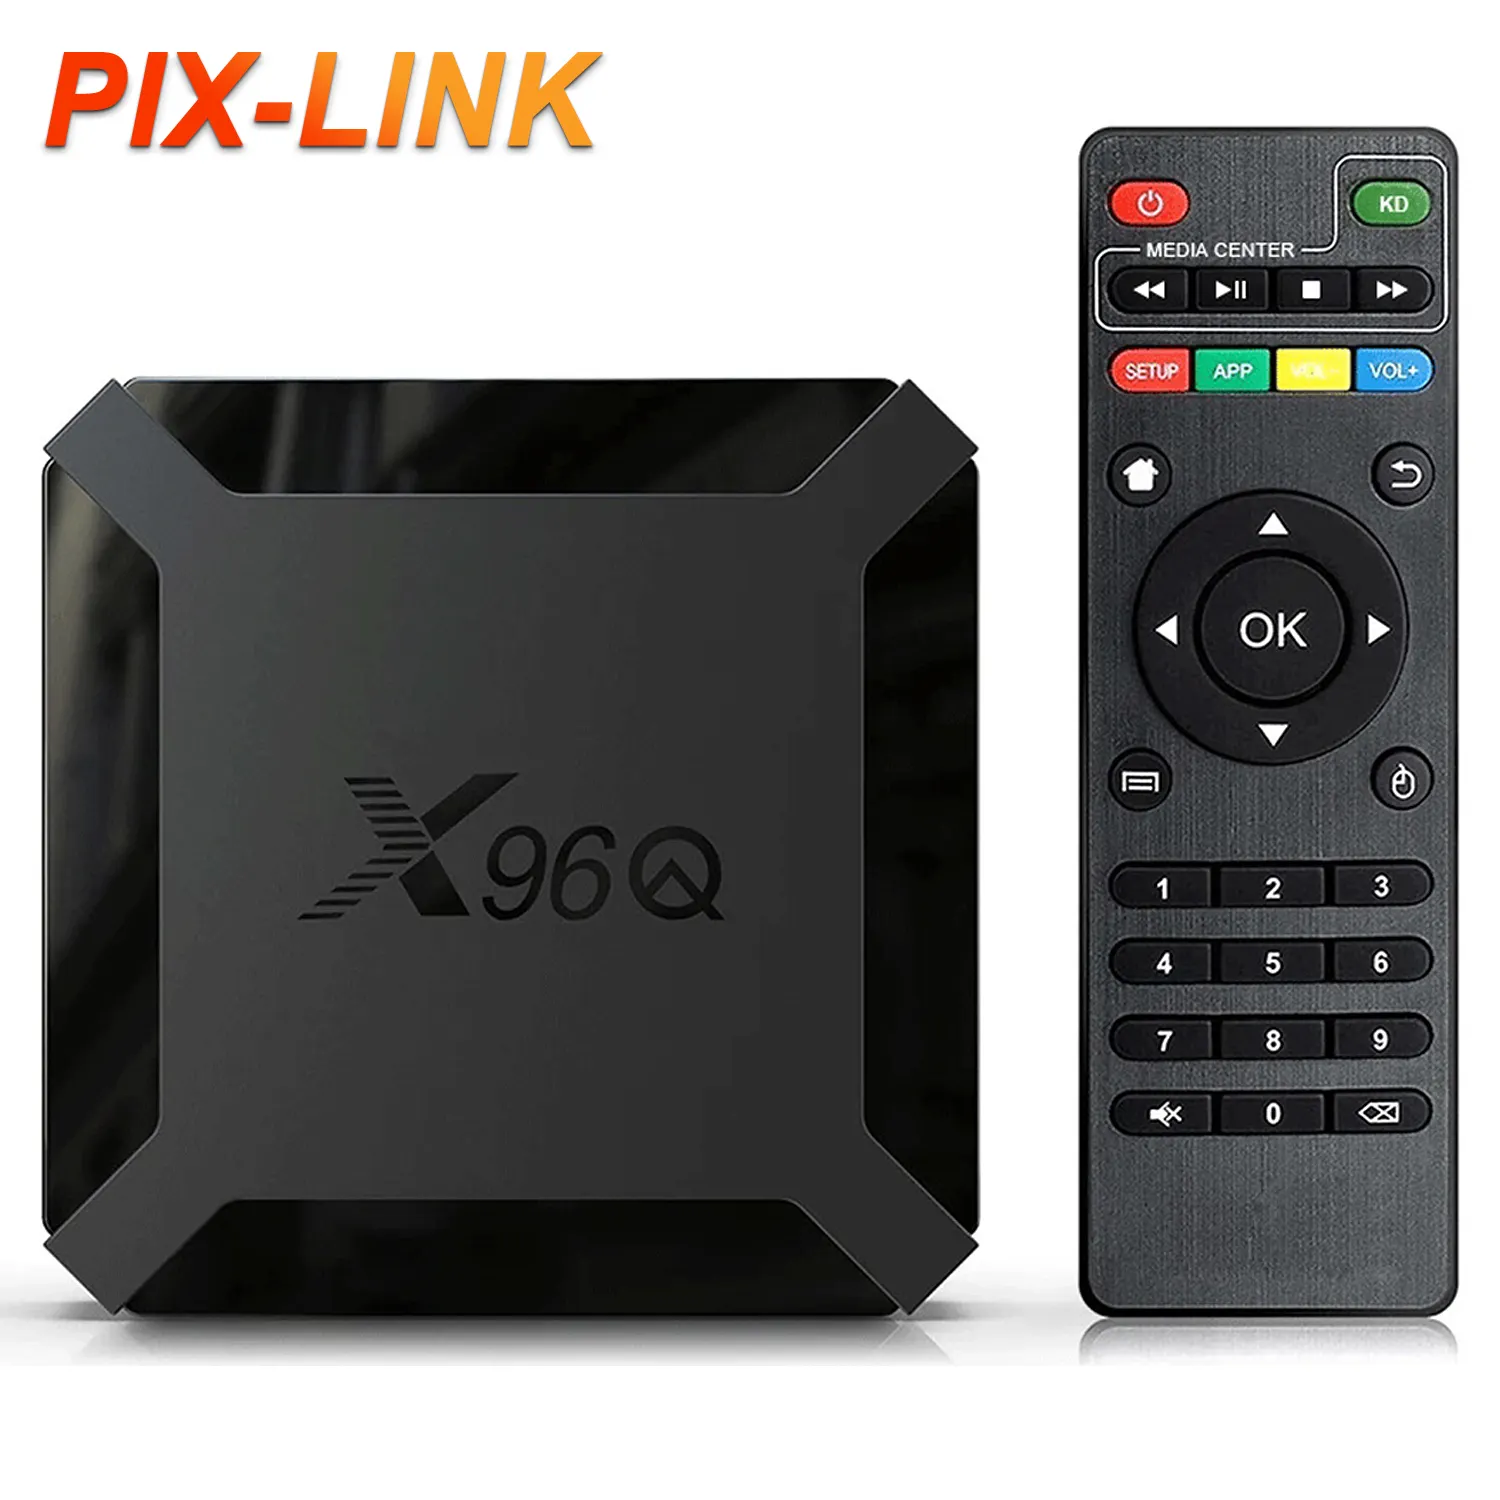 PIX-LINK - Receptor de satélite para TV e serviço de TV com logotipo personalizado Android Free Hd 700+ canais Árabes, caixa de TV 4K Quad Core X96Q